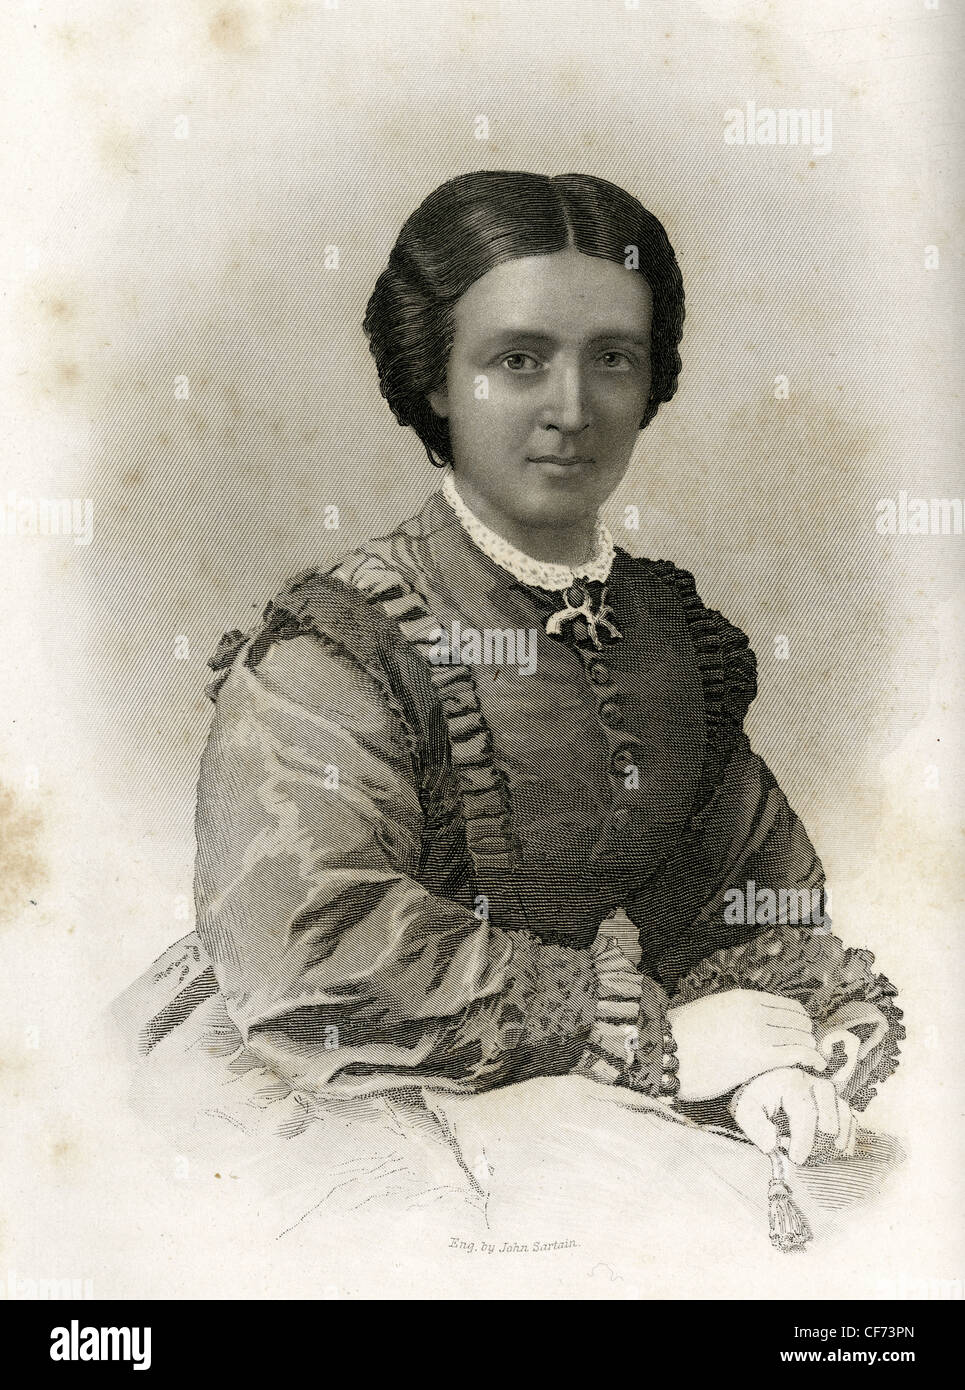 1867-Gravur von Mary Jane Safford-Blake. Stockfoto